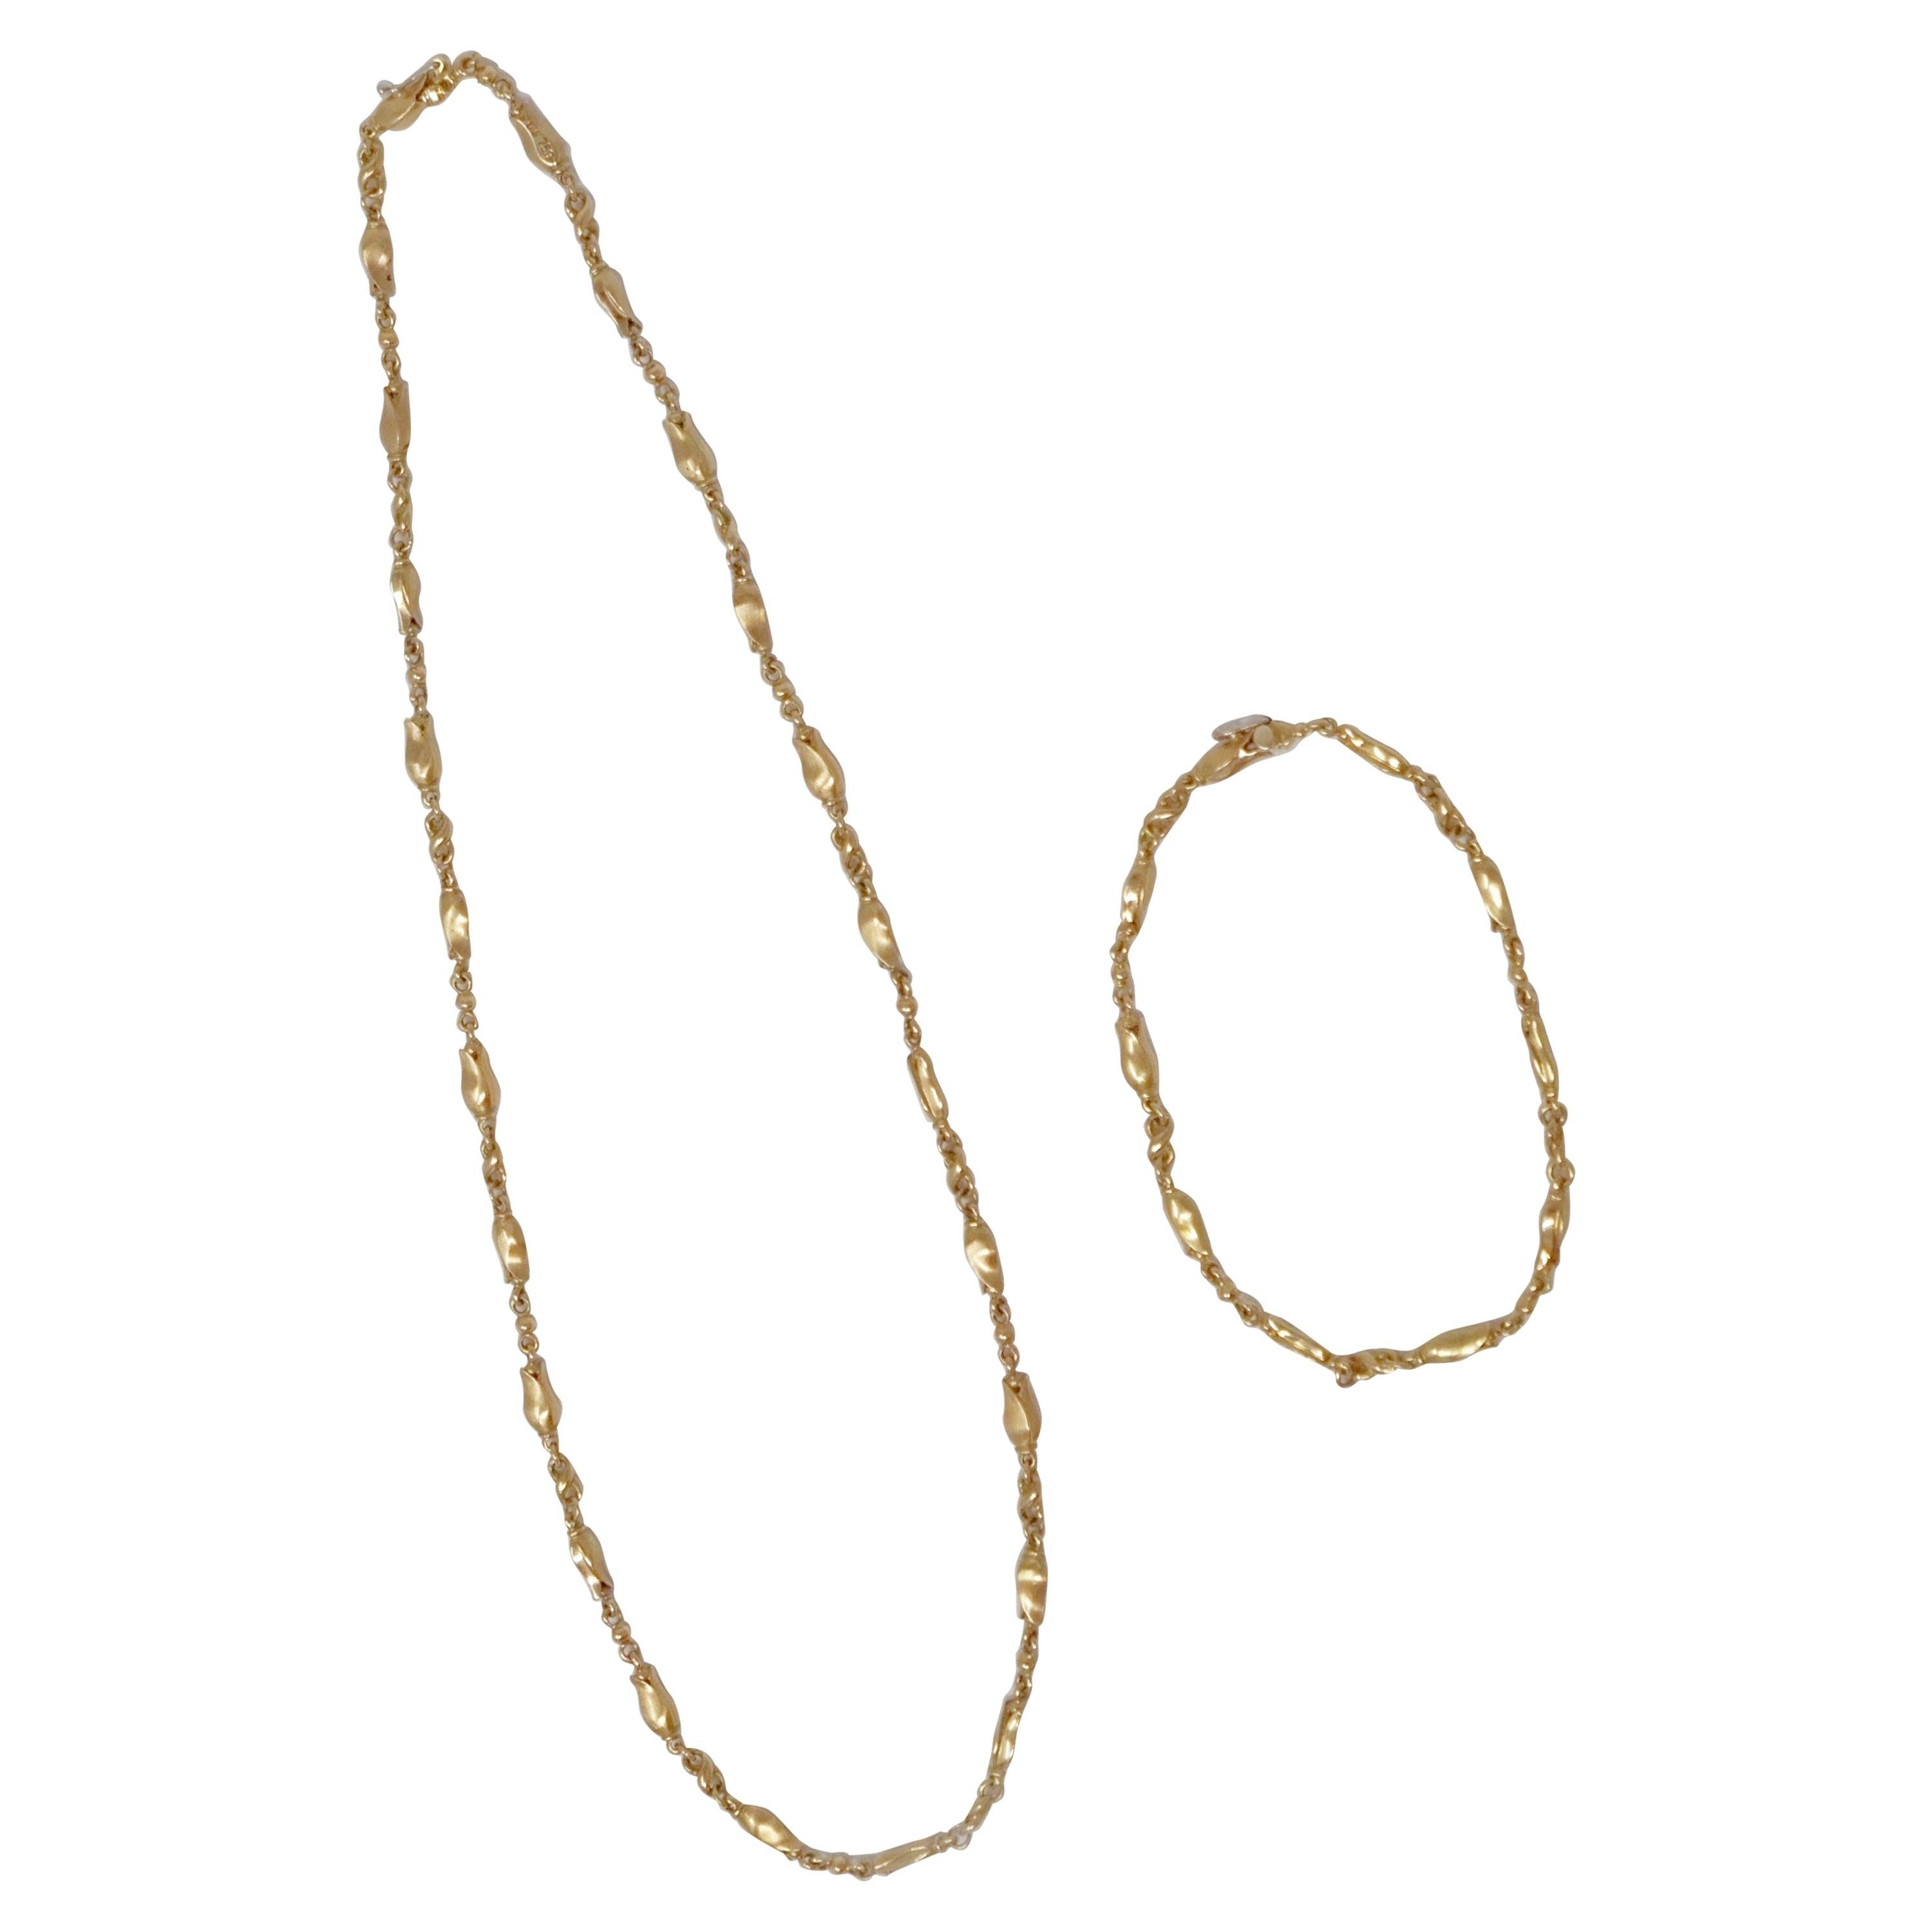 Georg Jensen 18 Karat Gold Necklace and Bracelet Set, Signed